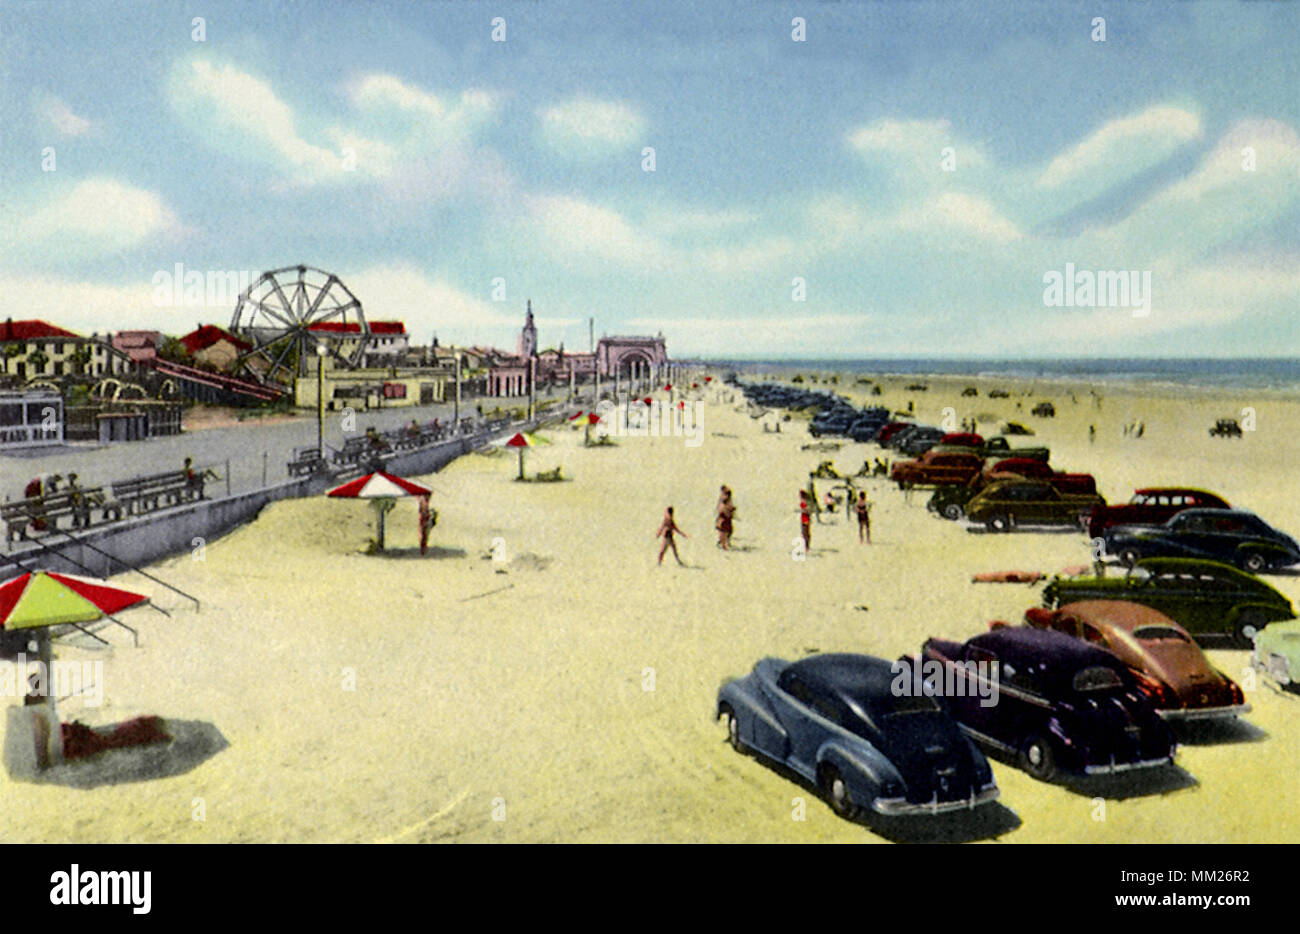 View of Beach and Boardwalk. Daytona Beach. 1950 Stock Photo